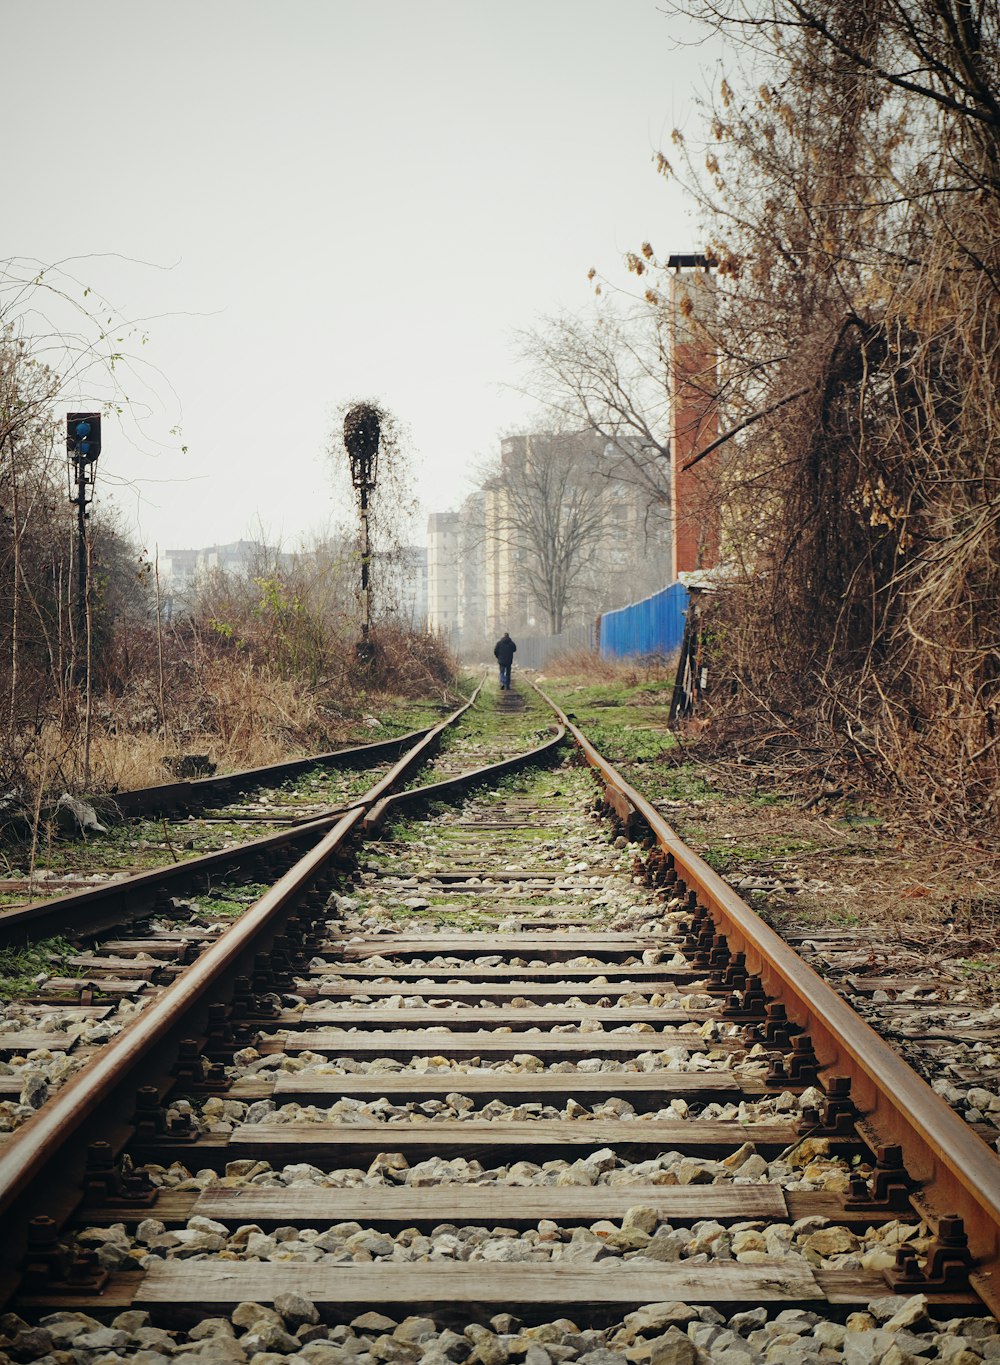 una vía de tren con una persona caminando sobre ella